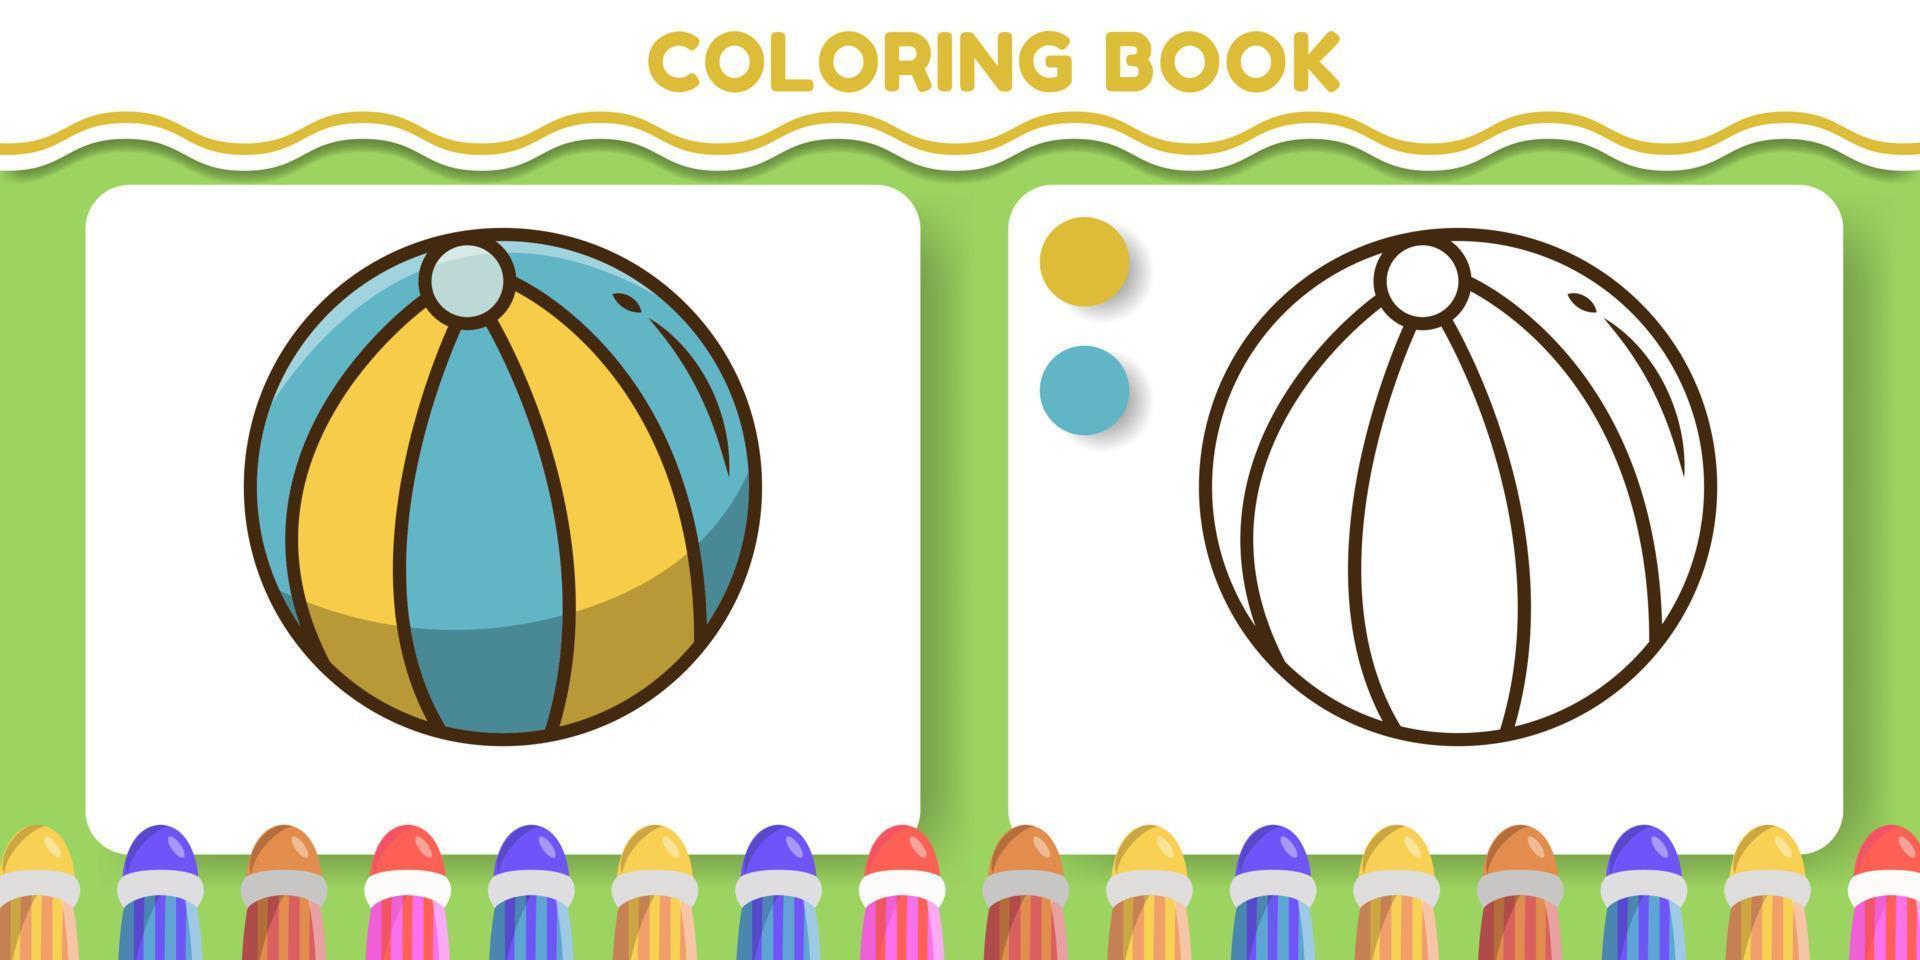 colorido y blanco y negro pelota de playa dibujado a mano dibujos animados doodle libro para colorear para niños vector